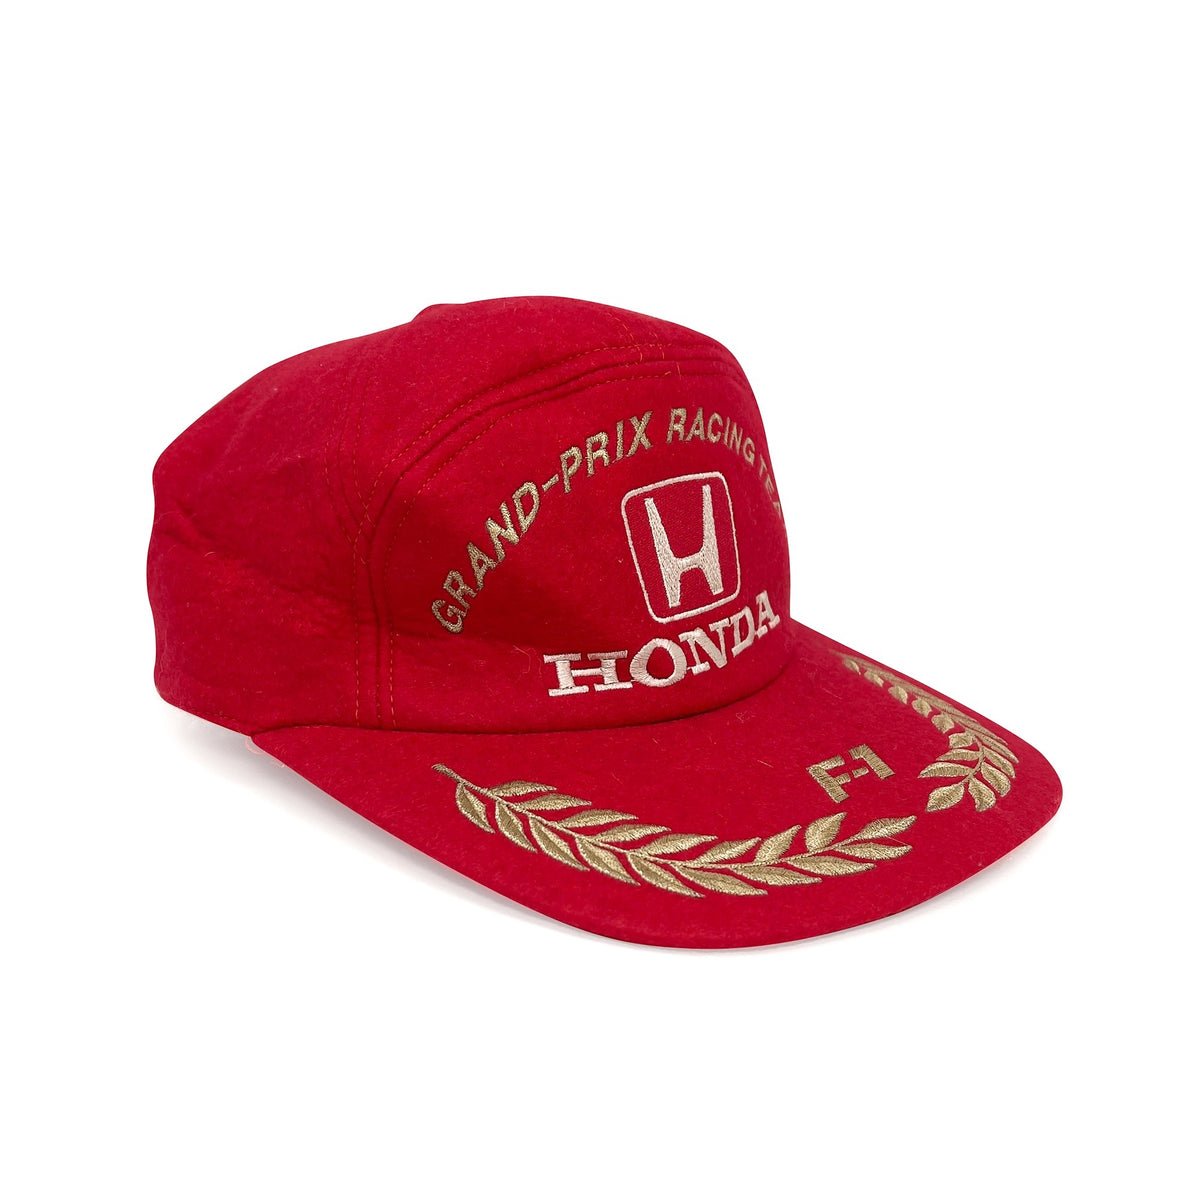 F1 Hats, Formula 1 Cap